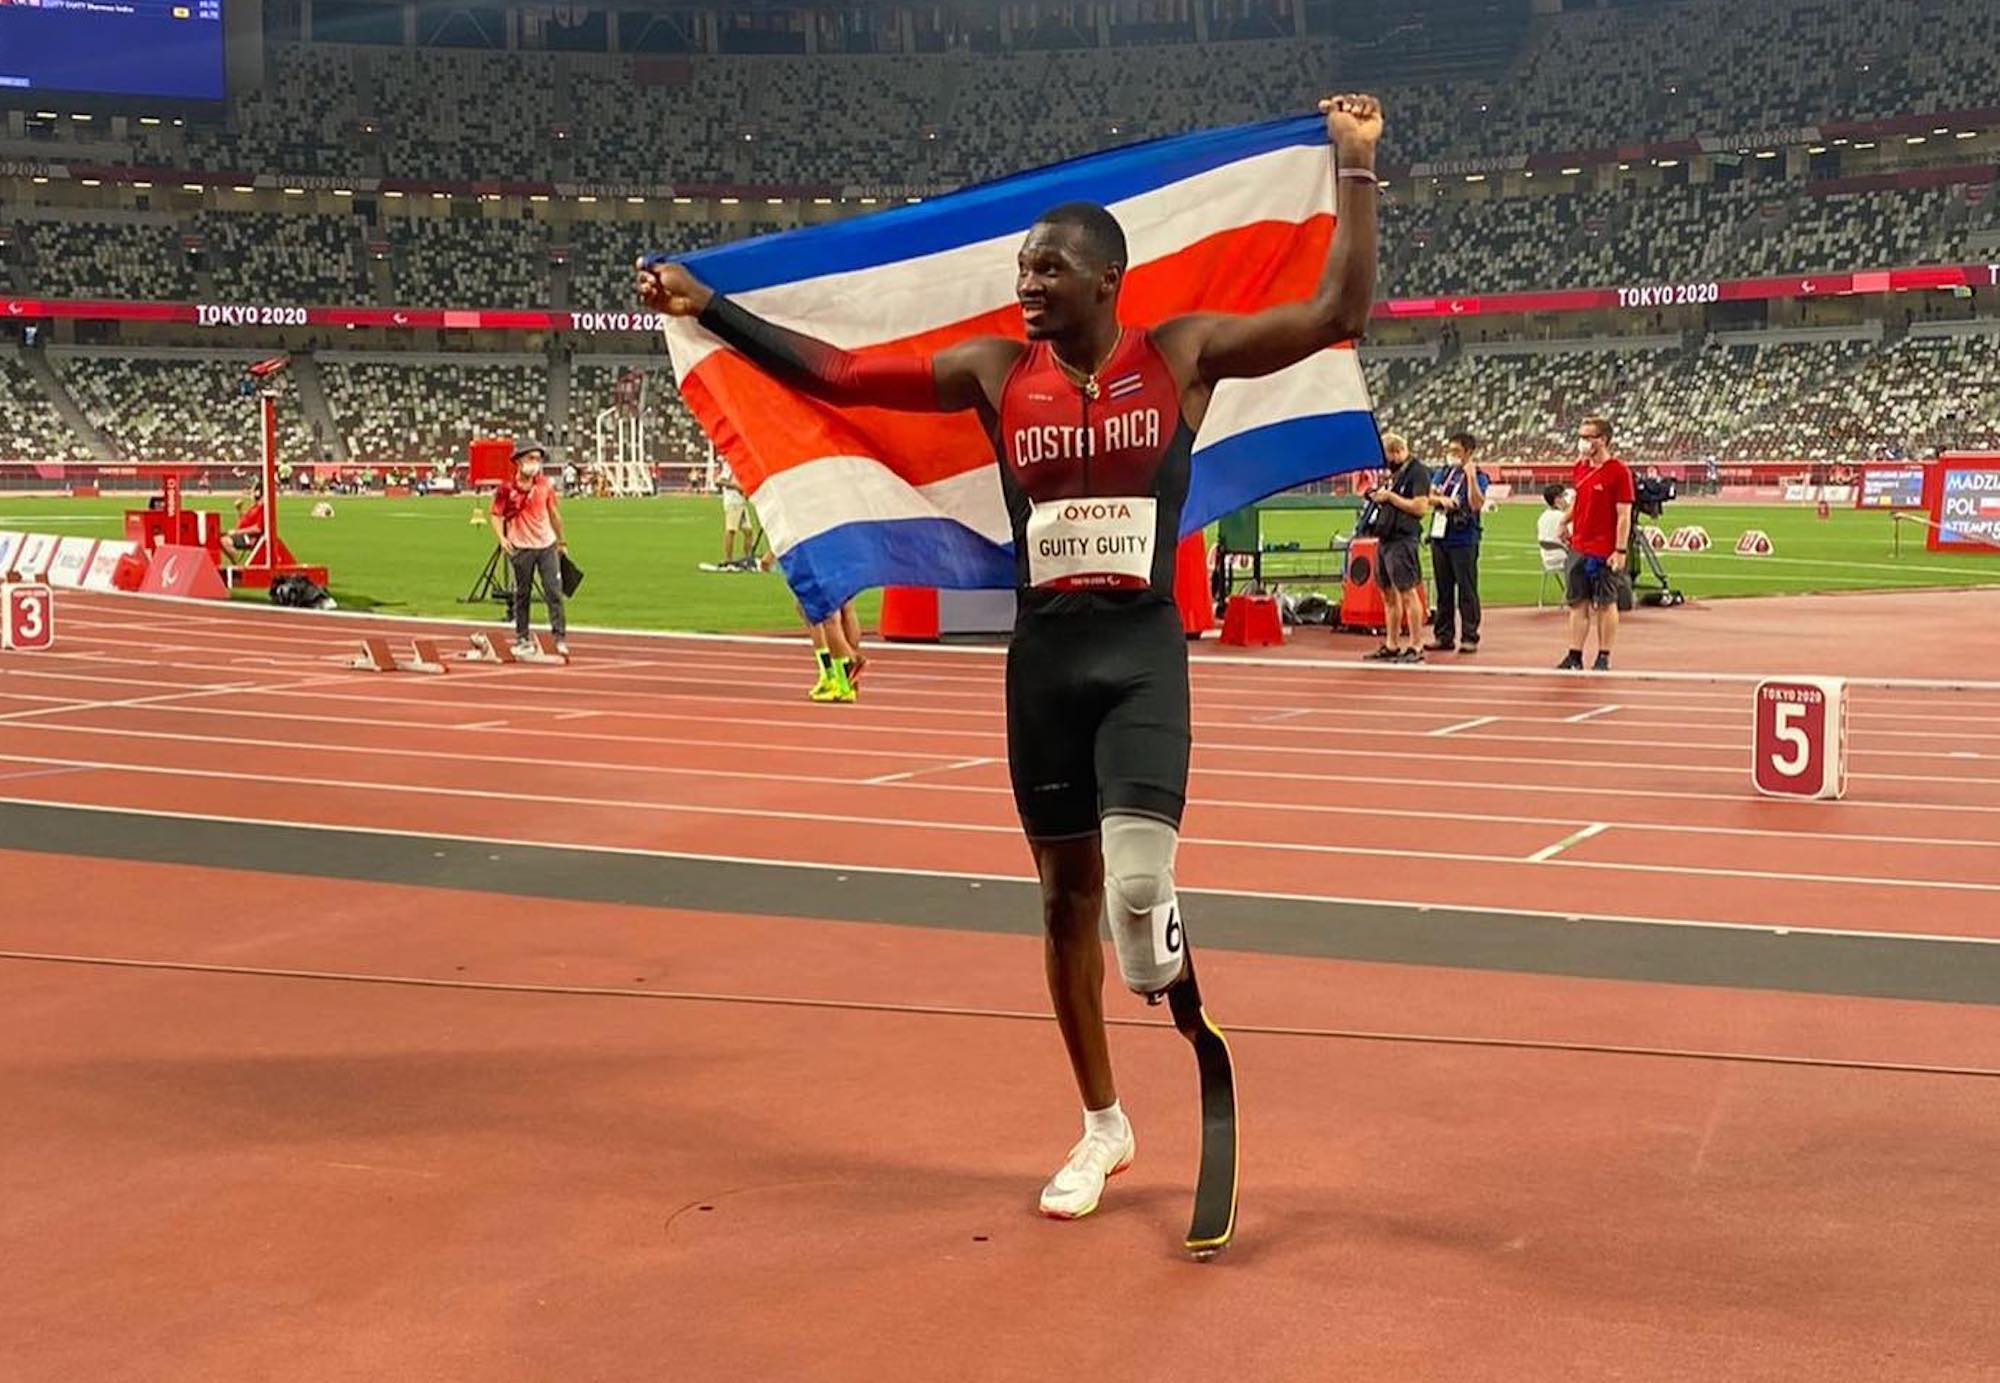 El atleta costarricense Sherman Guity gana medalla de plata en los 100 metros planos de los Paralímpicos